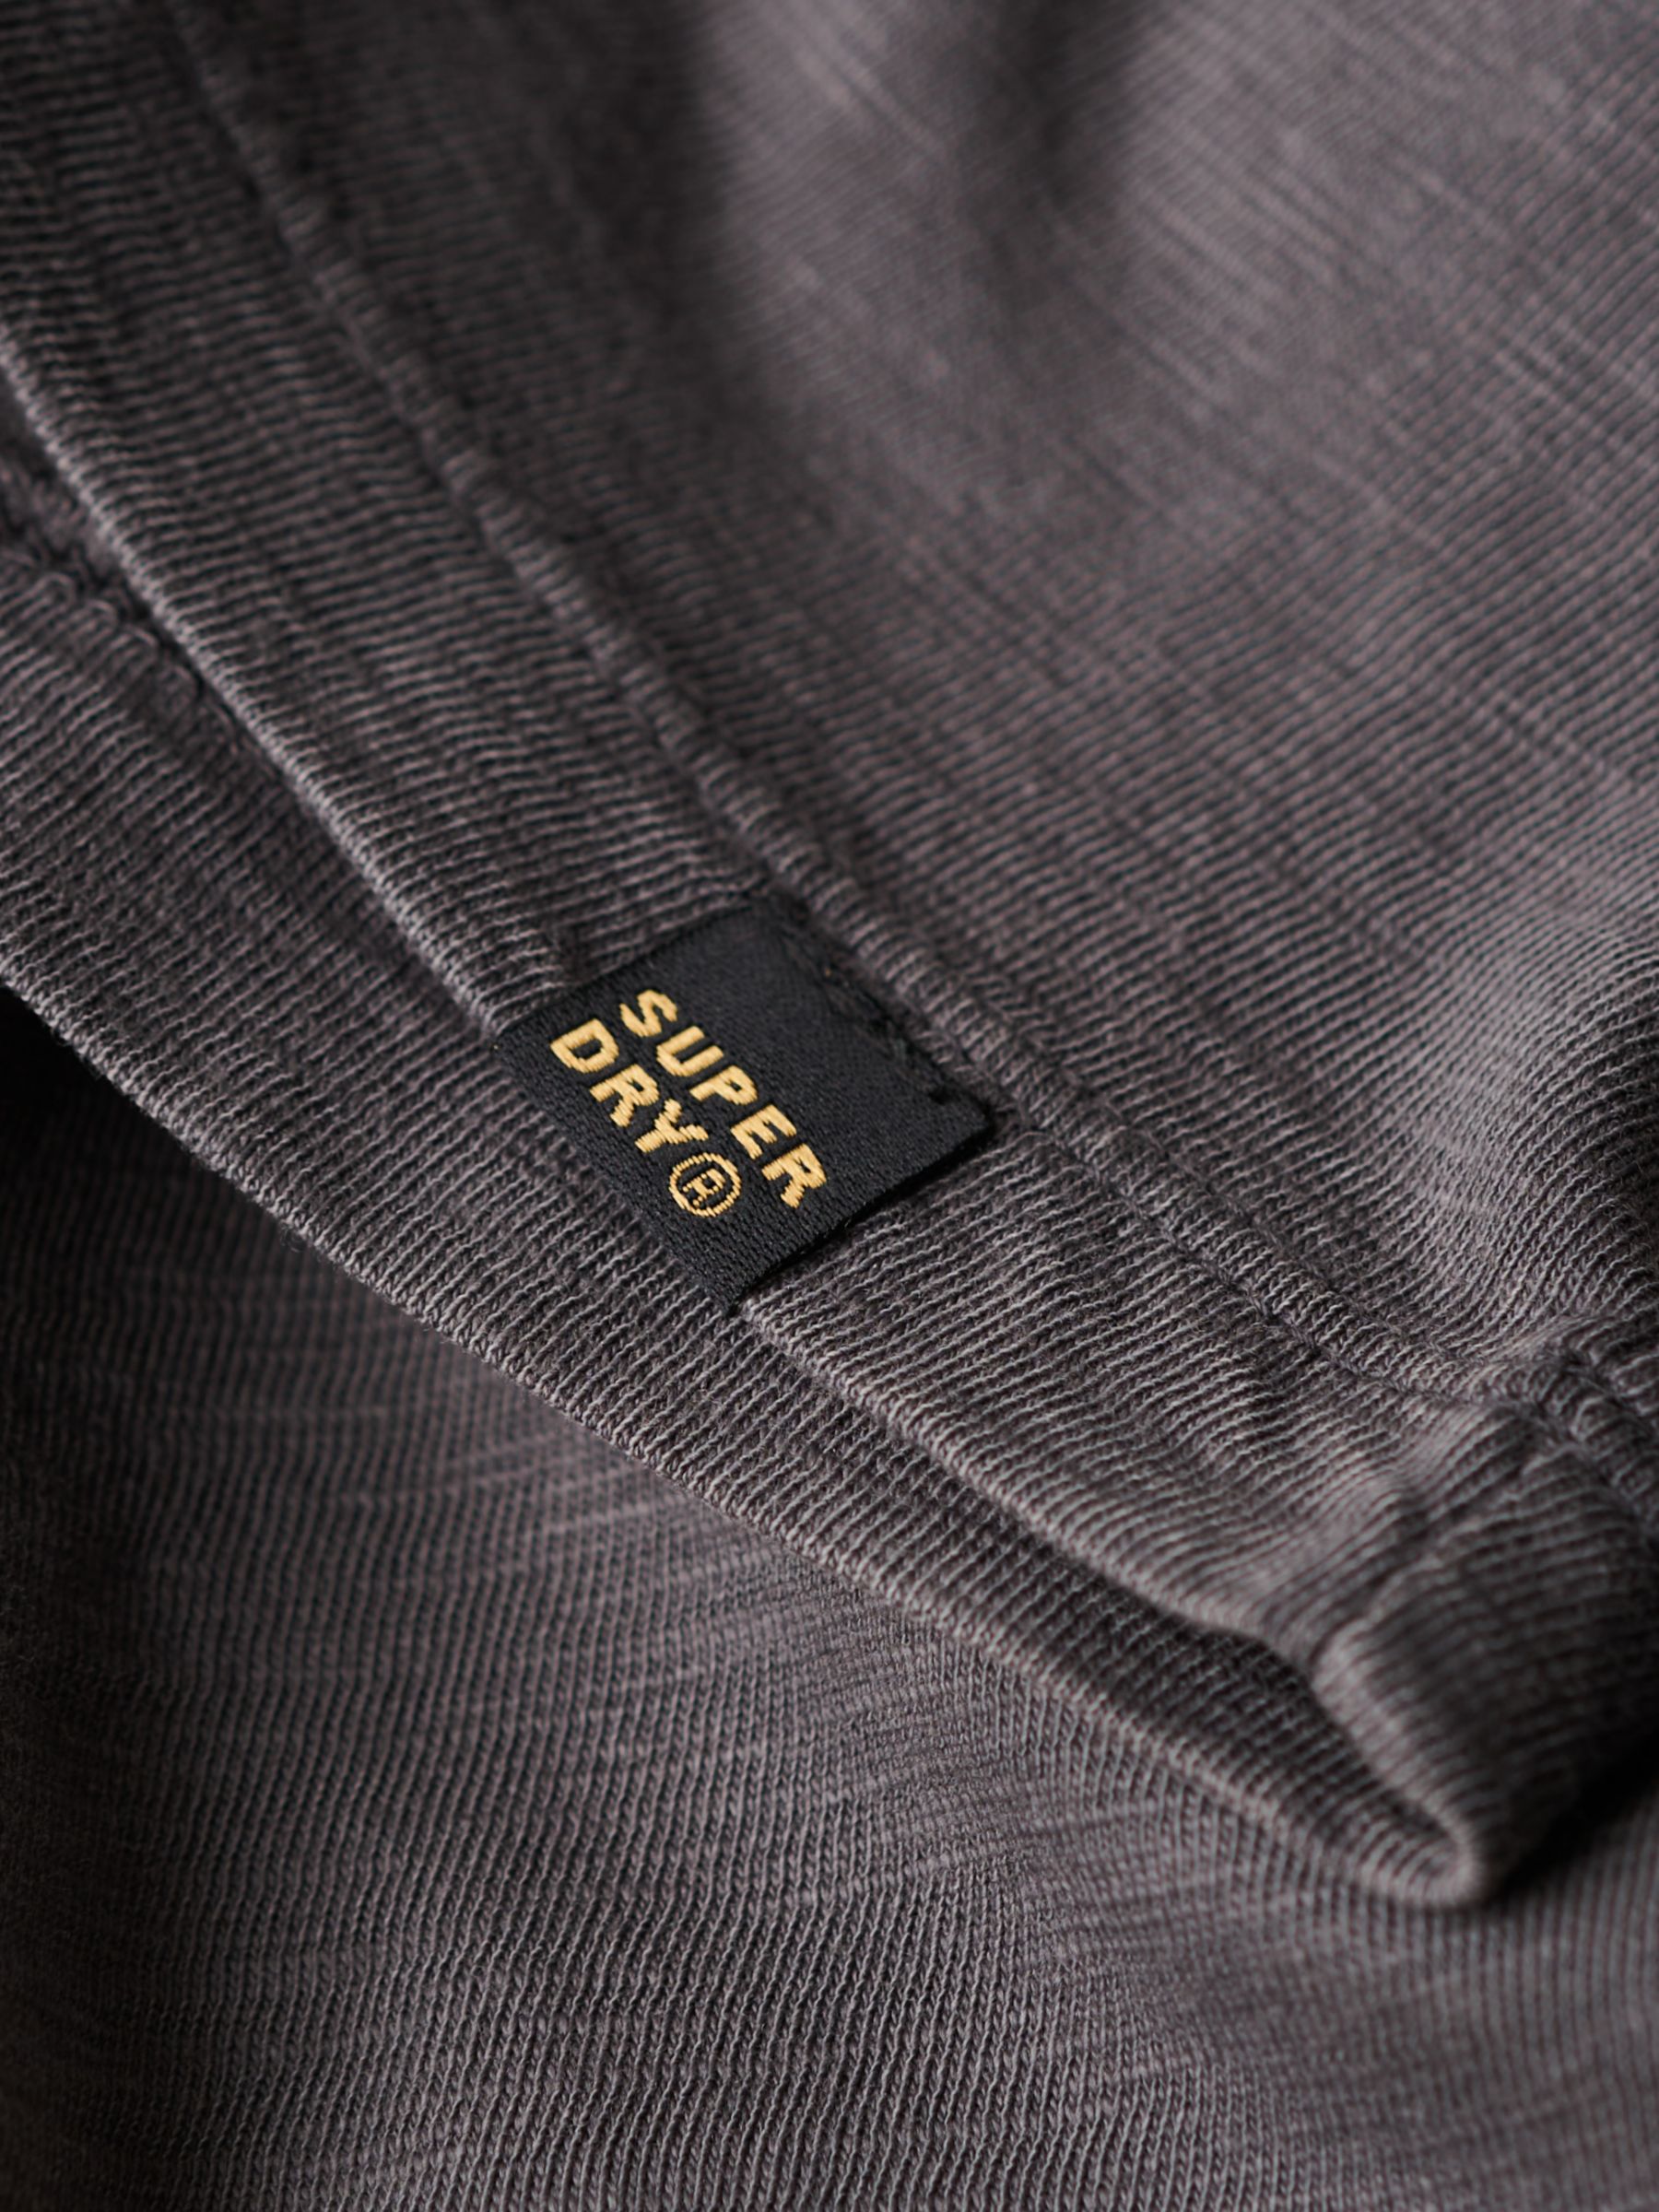 Buy Superdry V-Neck Slub Short Sleeve T-Shirt Online at johnlewis.com